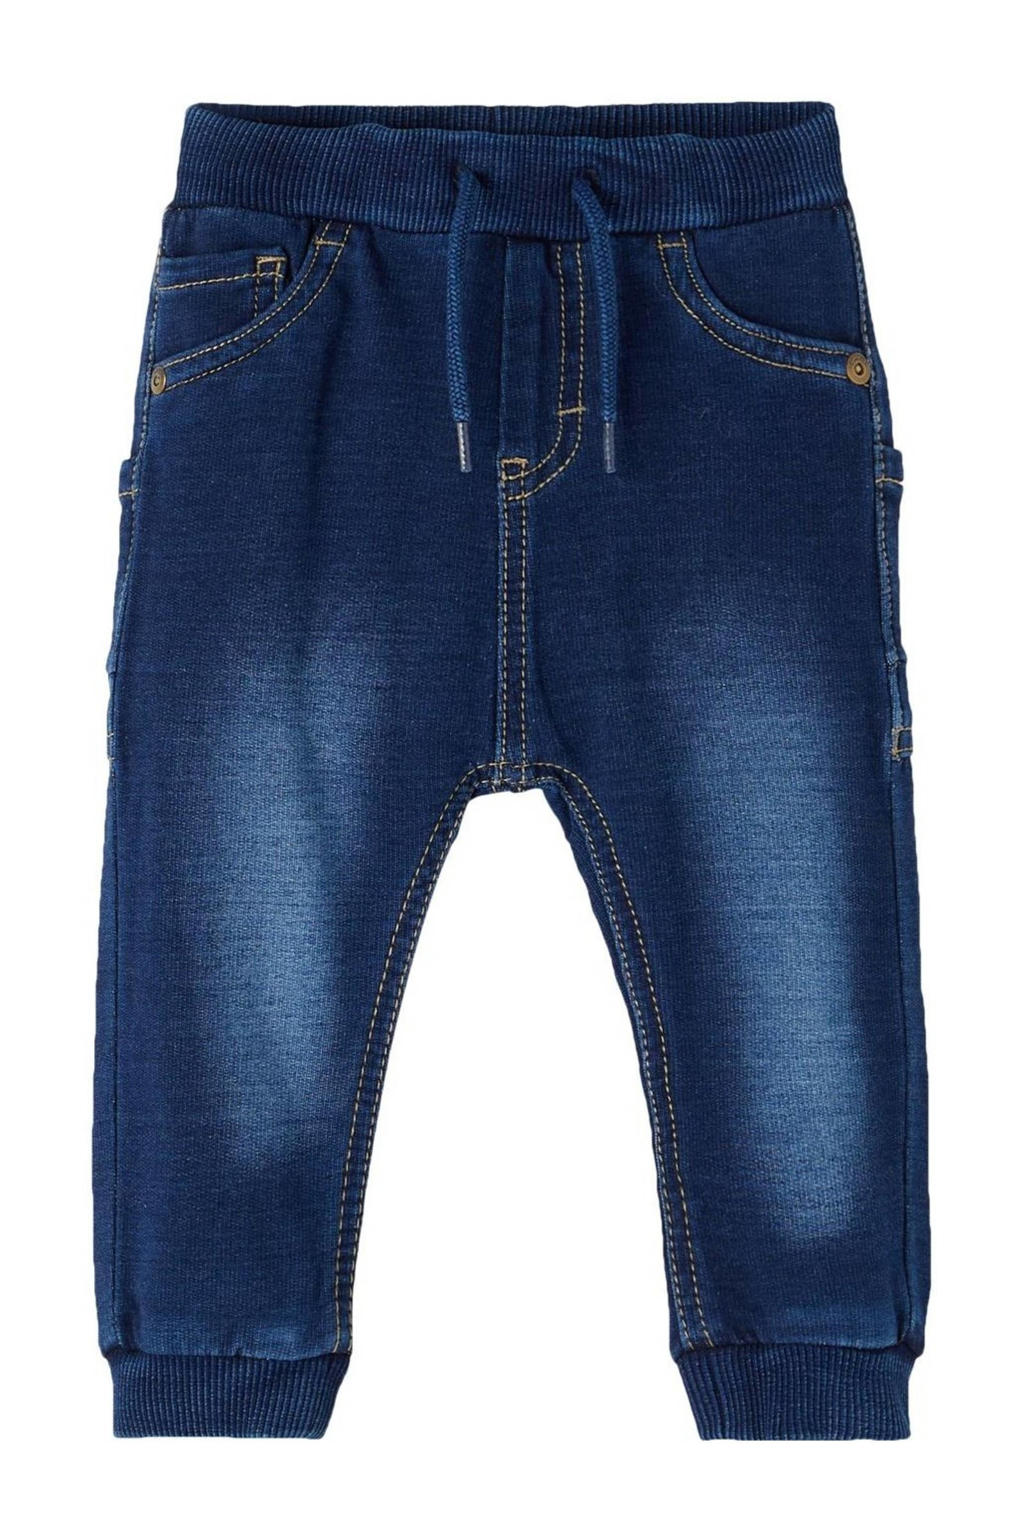 Donkerblauwe jongens NAME IT BABY baby slim fit jeans van stretchdenim met regular waist en elastische tailleband met koord